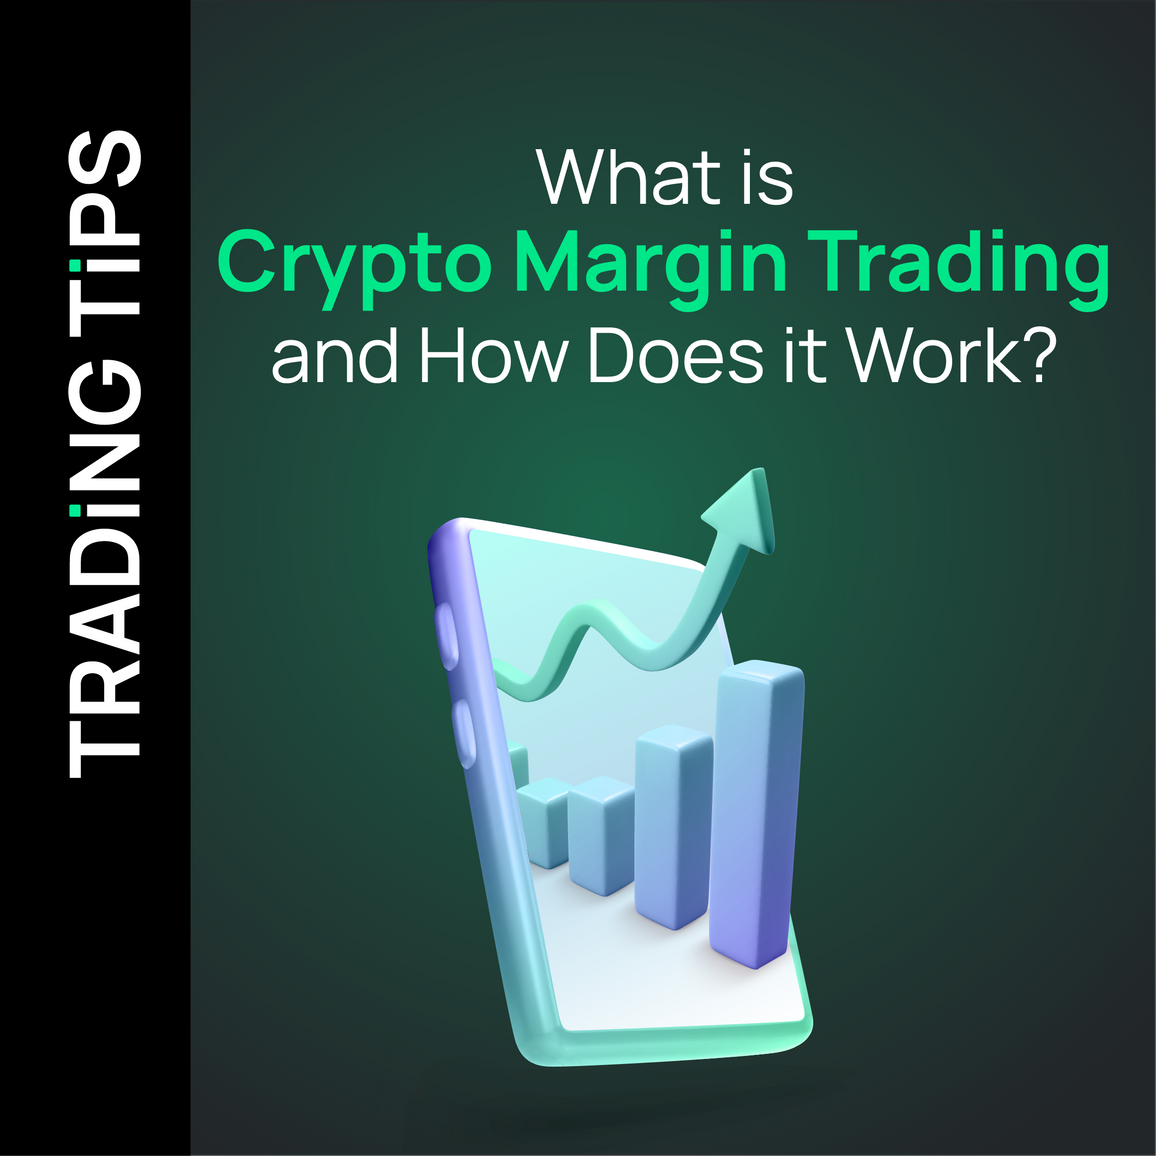 crypto margin trading explained